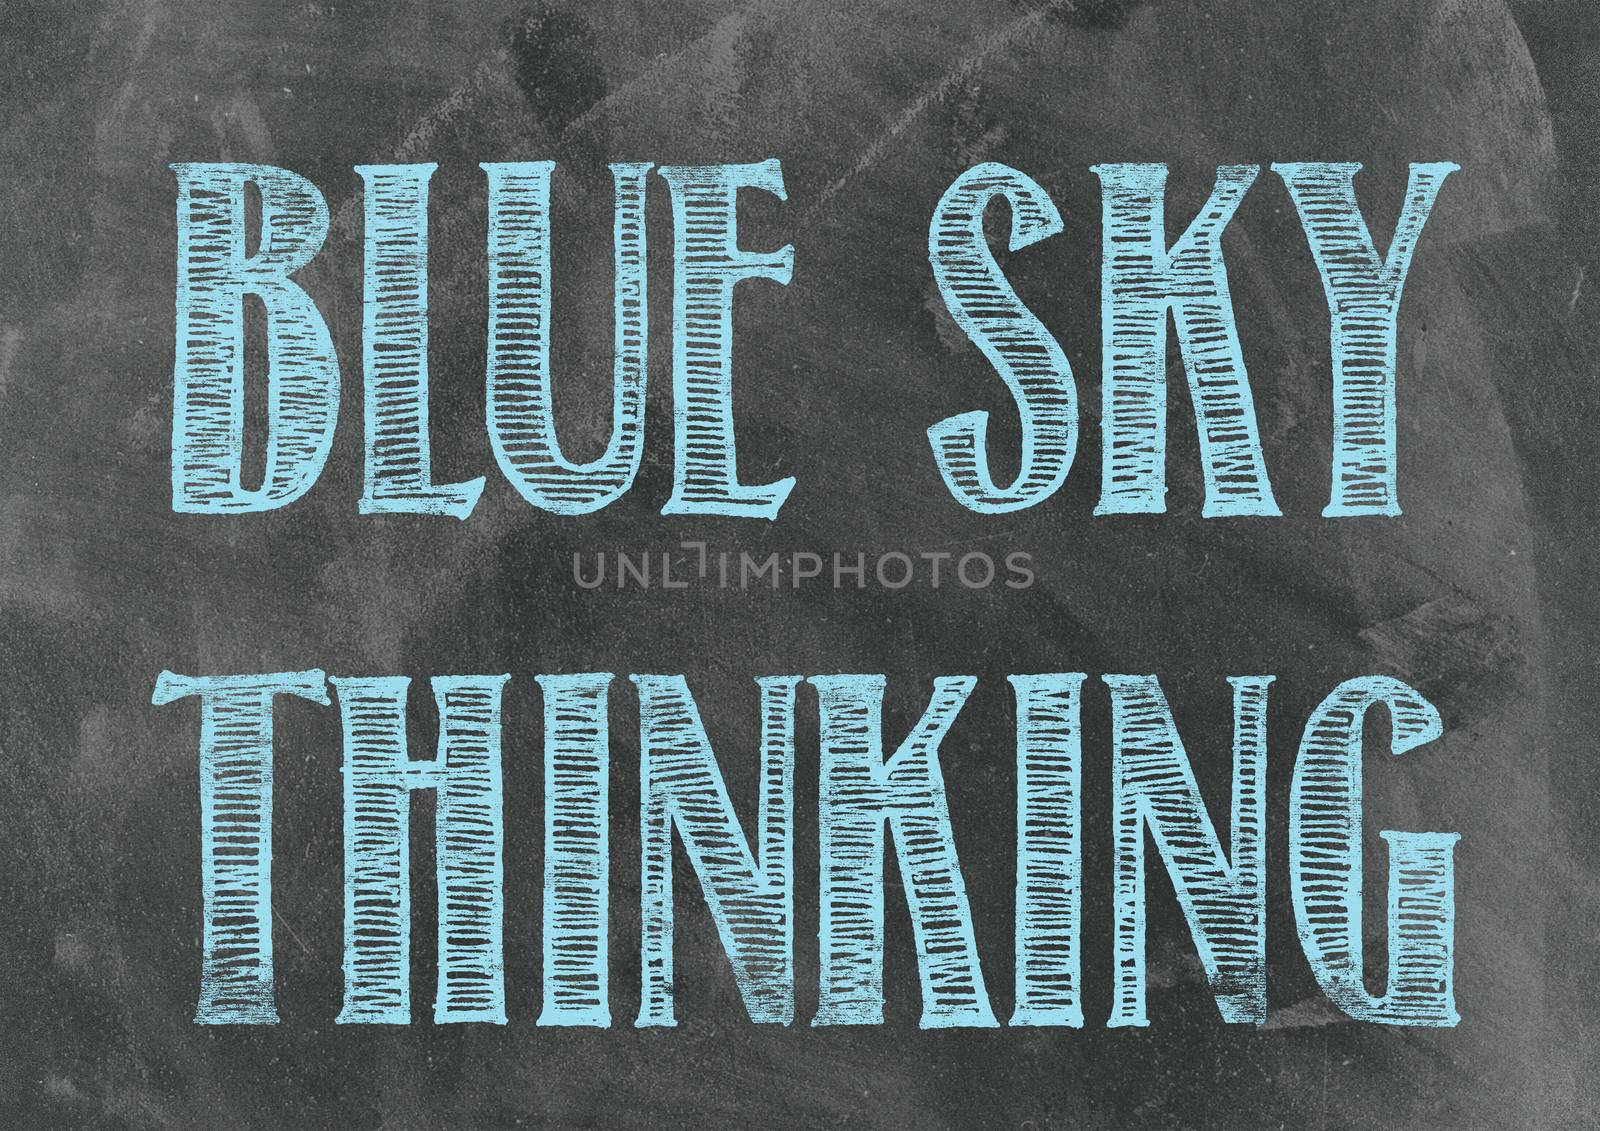 Blue Sky Thinking on a Blackboard